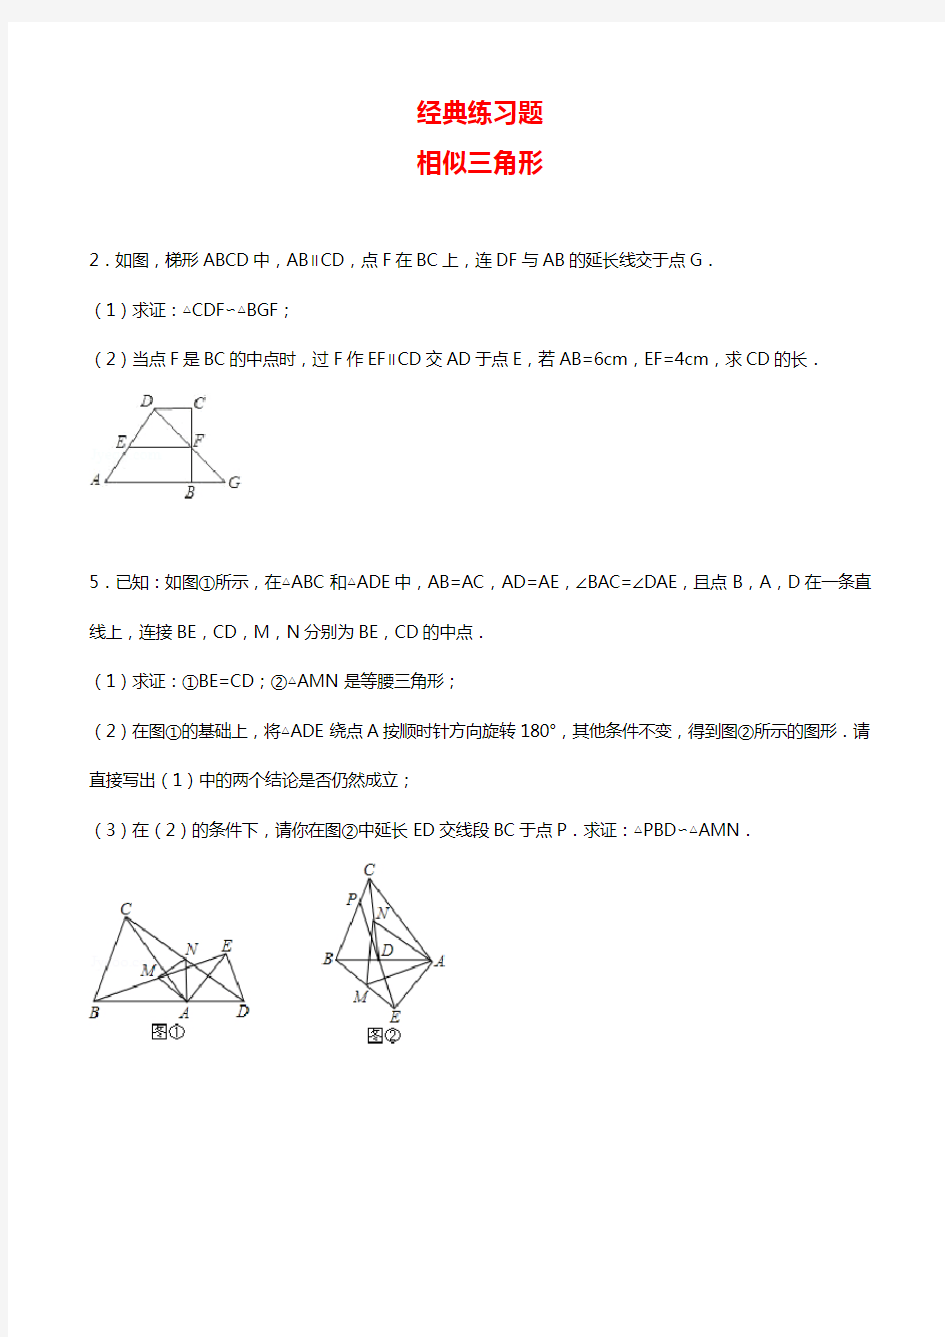 初中数学经典相似三角形练习题(附参考答案)